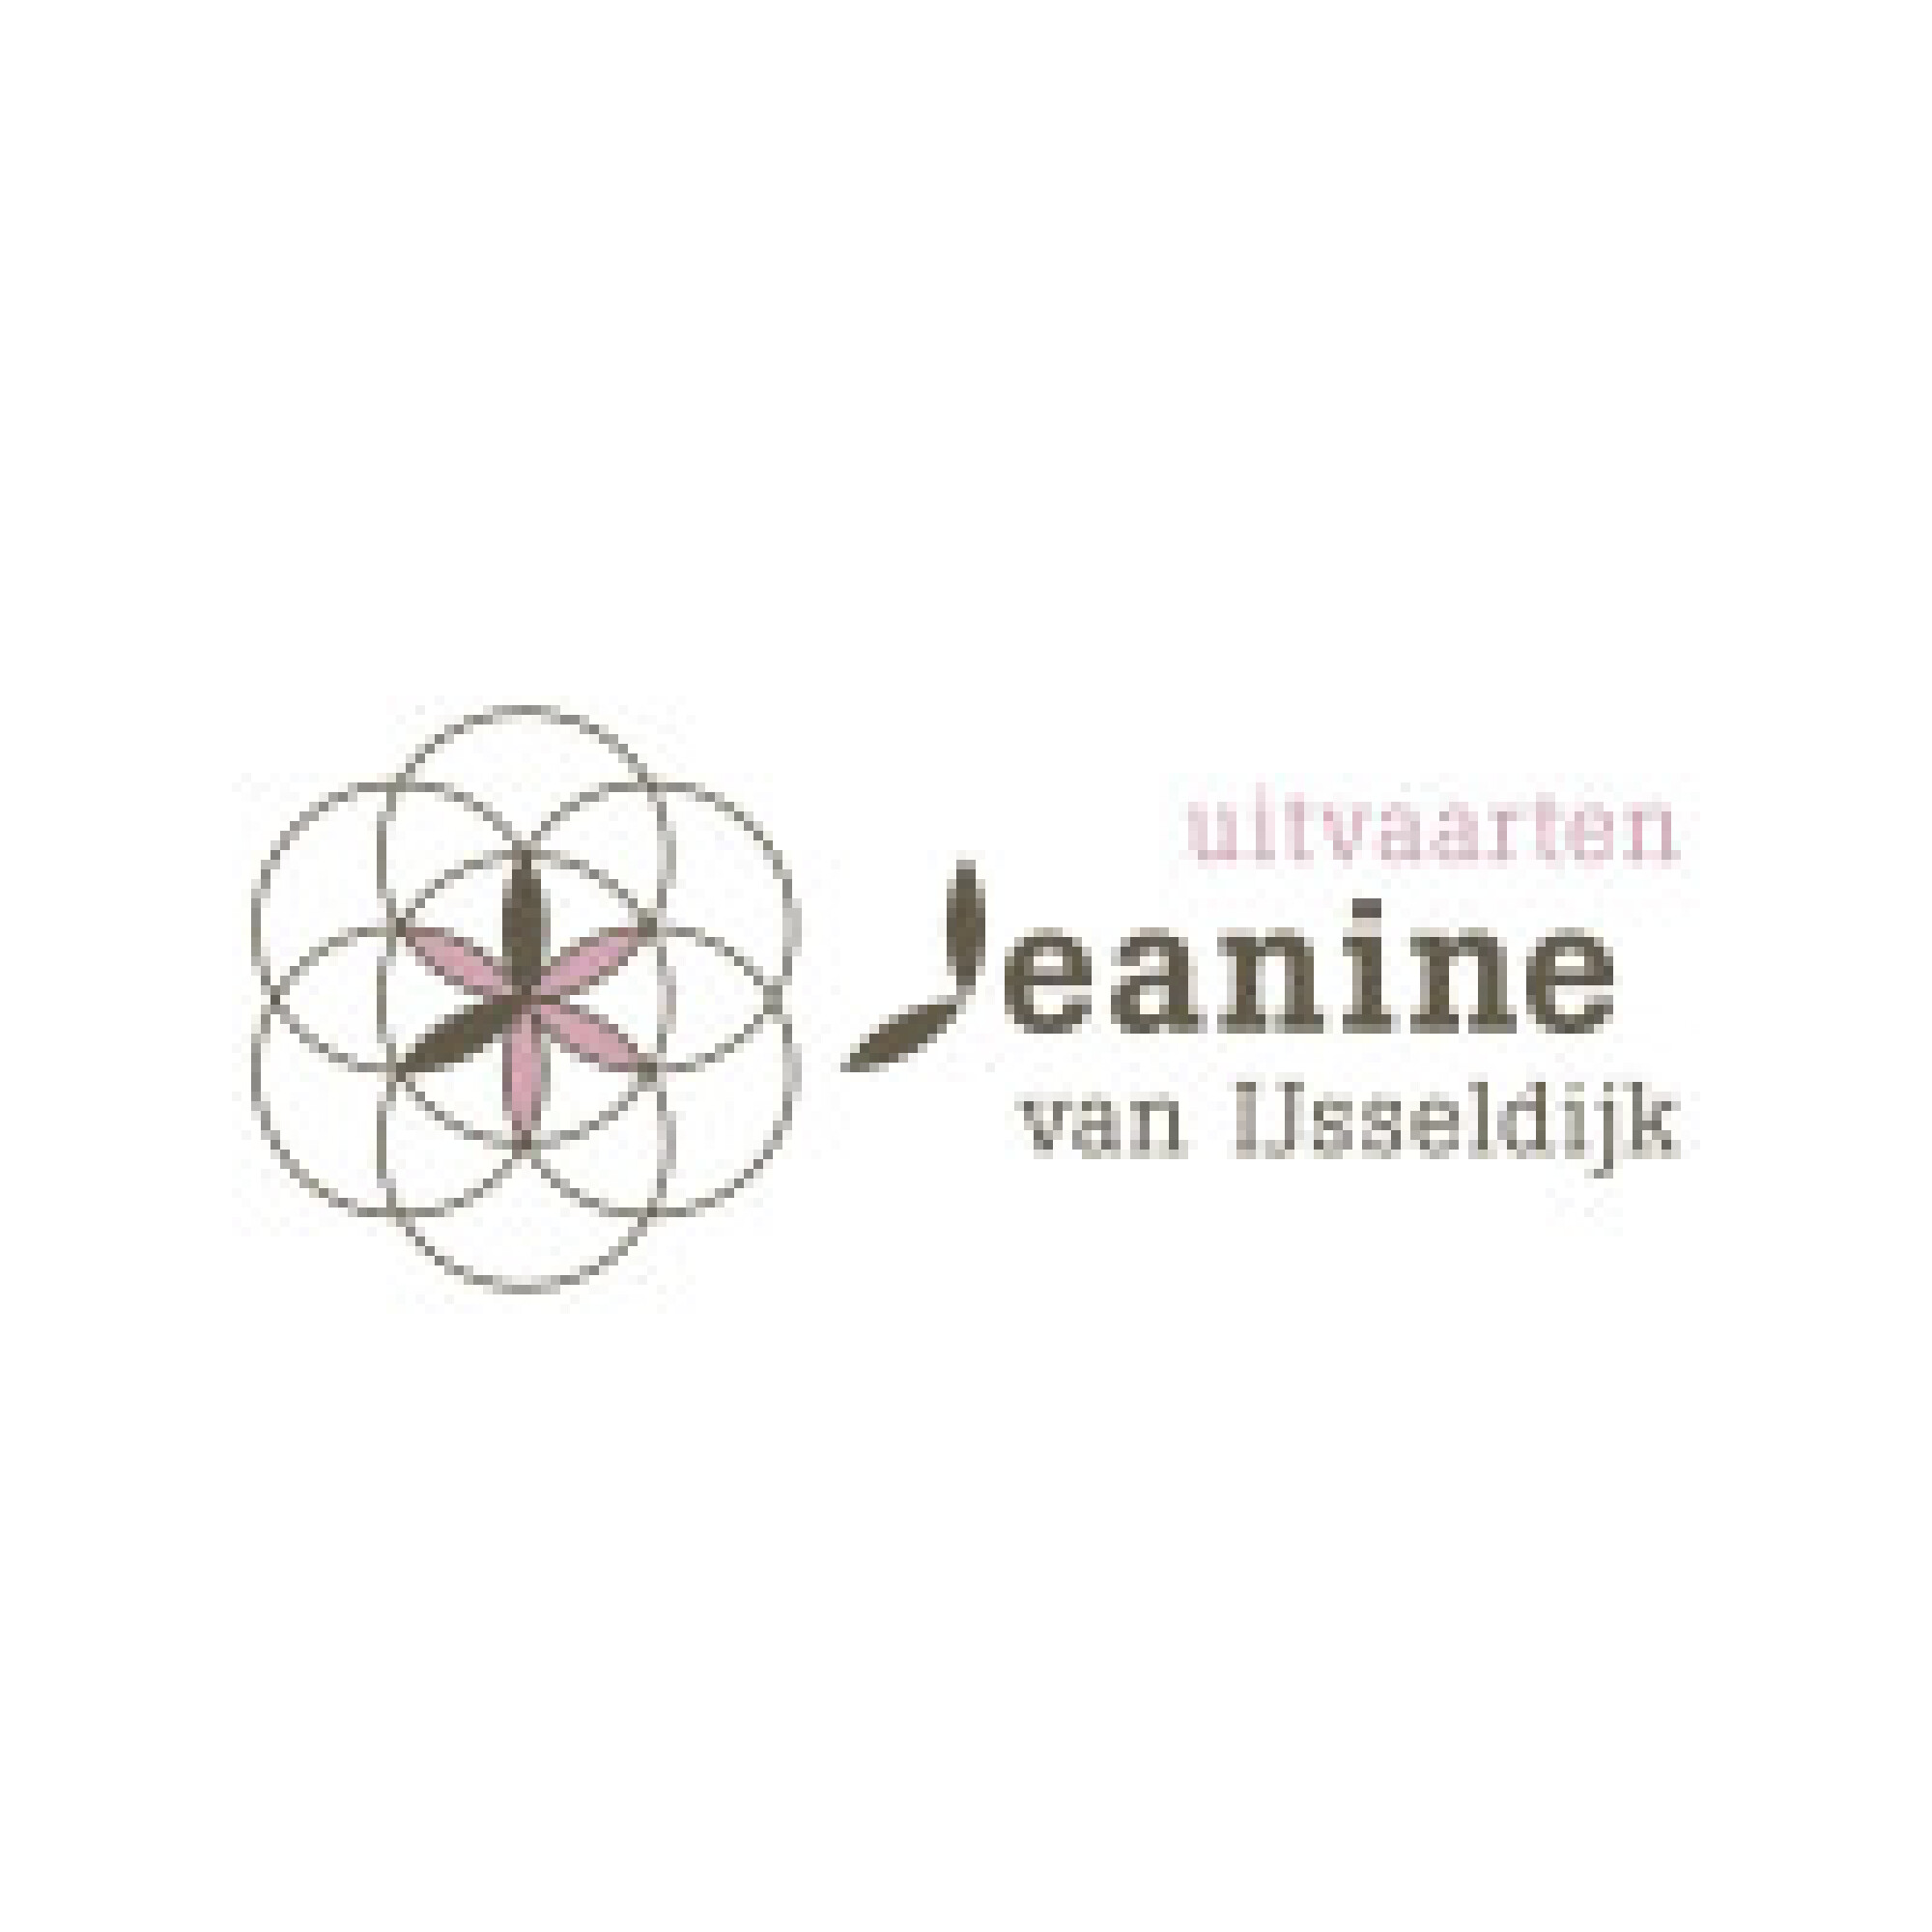 Jeanine van IJsseldijk Uitvaartbegeleiding